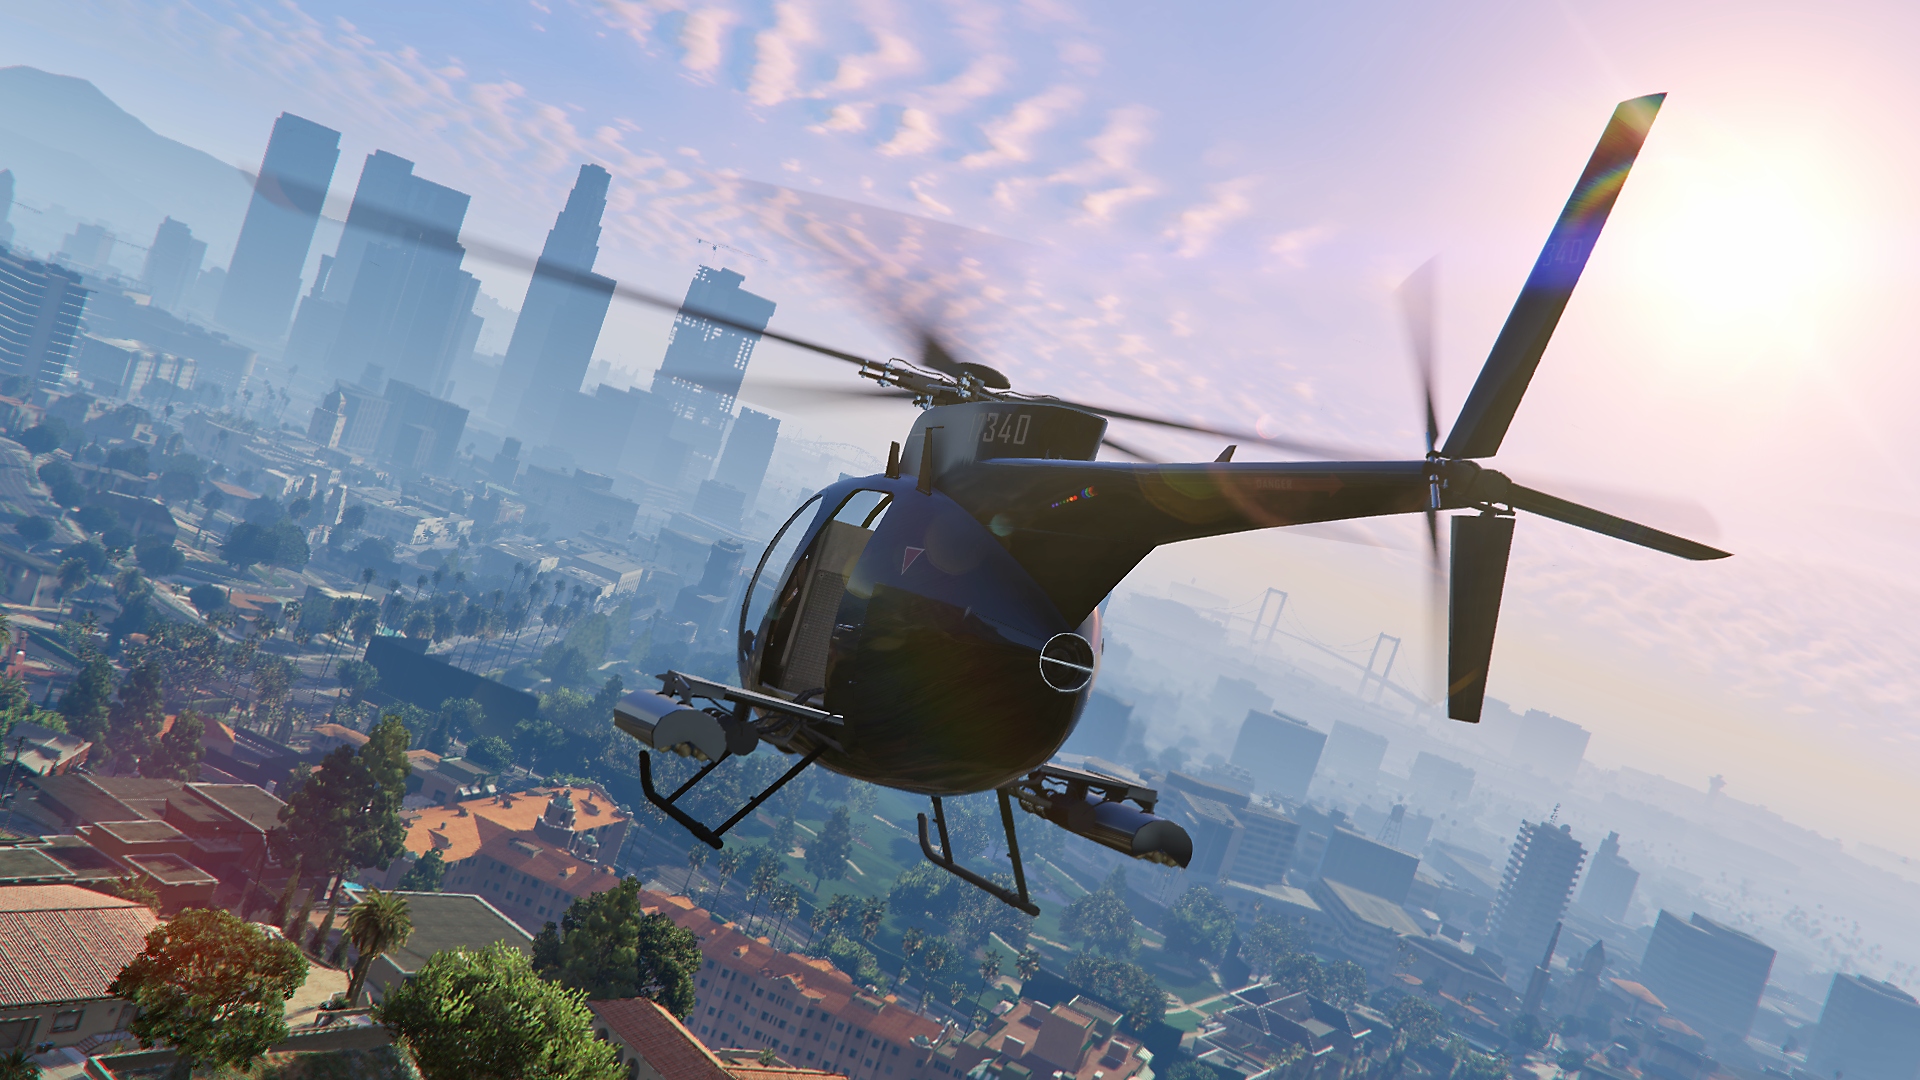 Grand Theft Auto V – snímek obrazovky zobrazující letící vrtulník s panoramatem města na pozadí